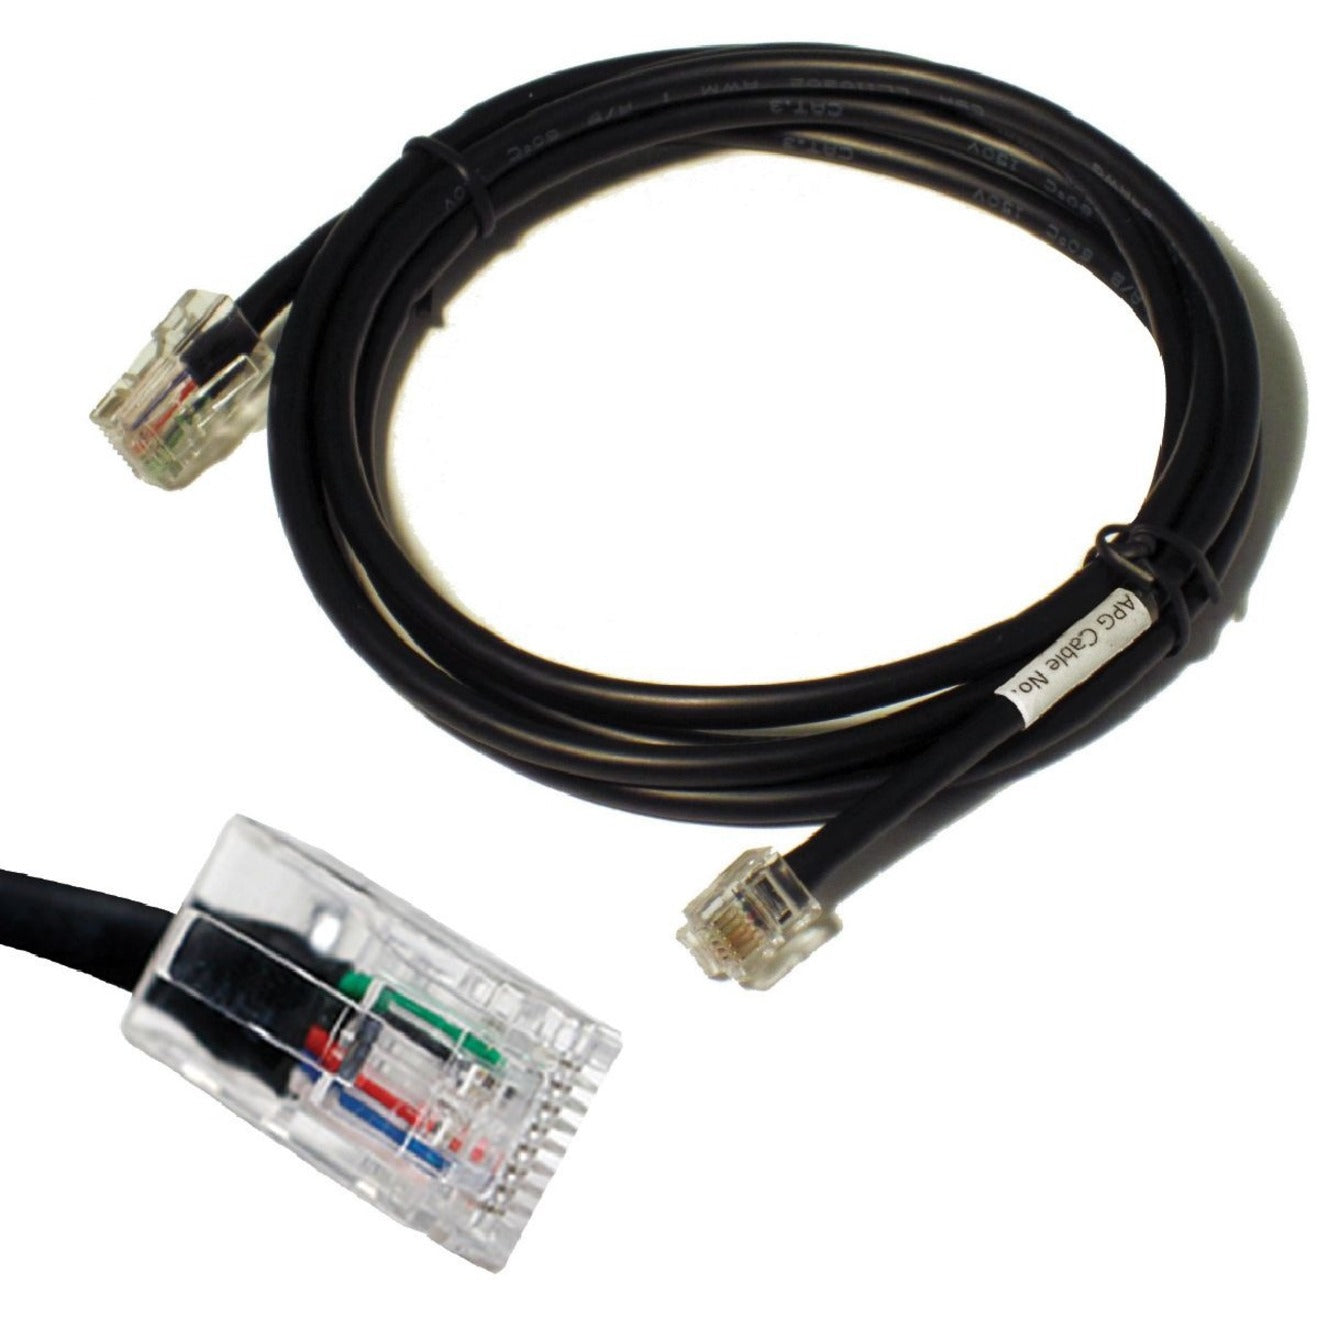 品牌名称：apg 多用途数据传输电缆，10英尺，适用于爱普生TM和Star TSP/SP打印机